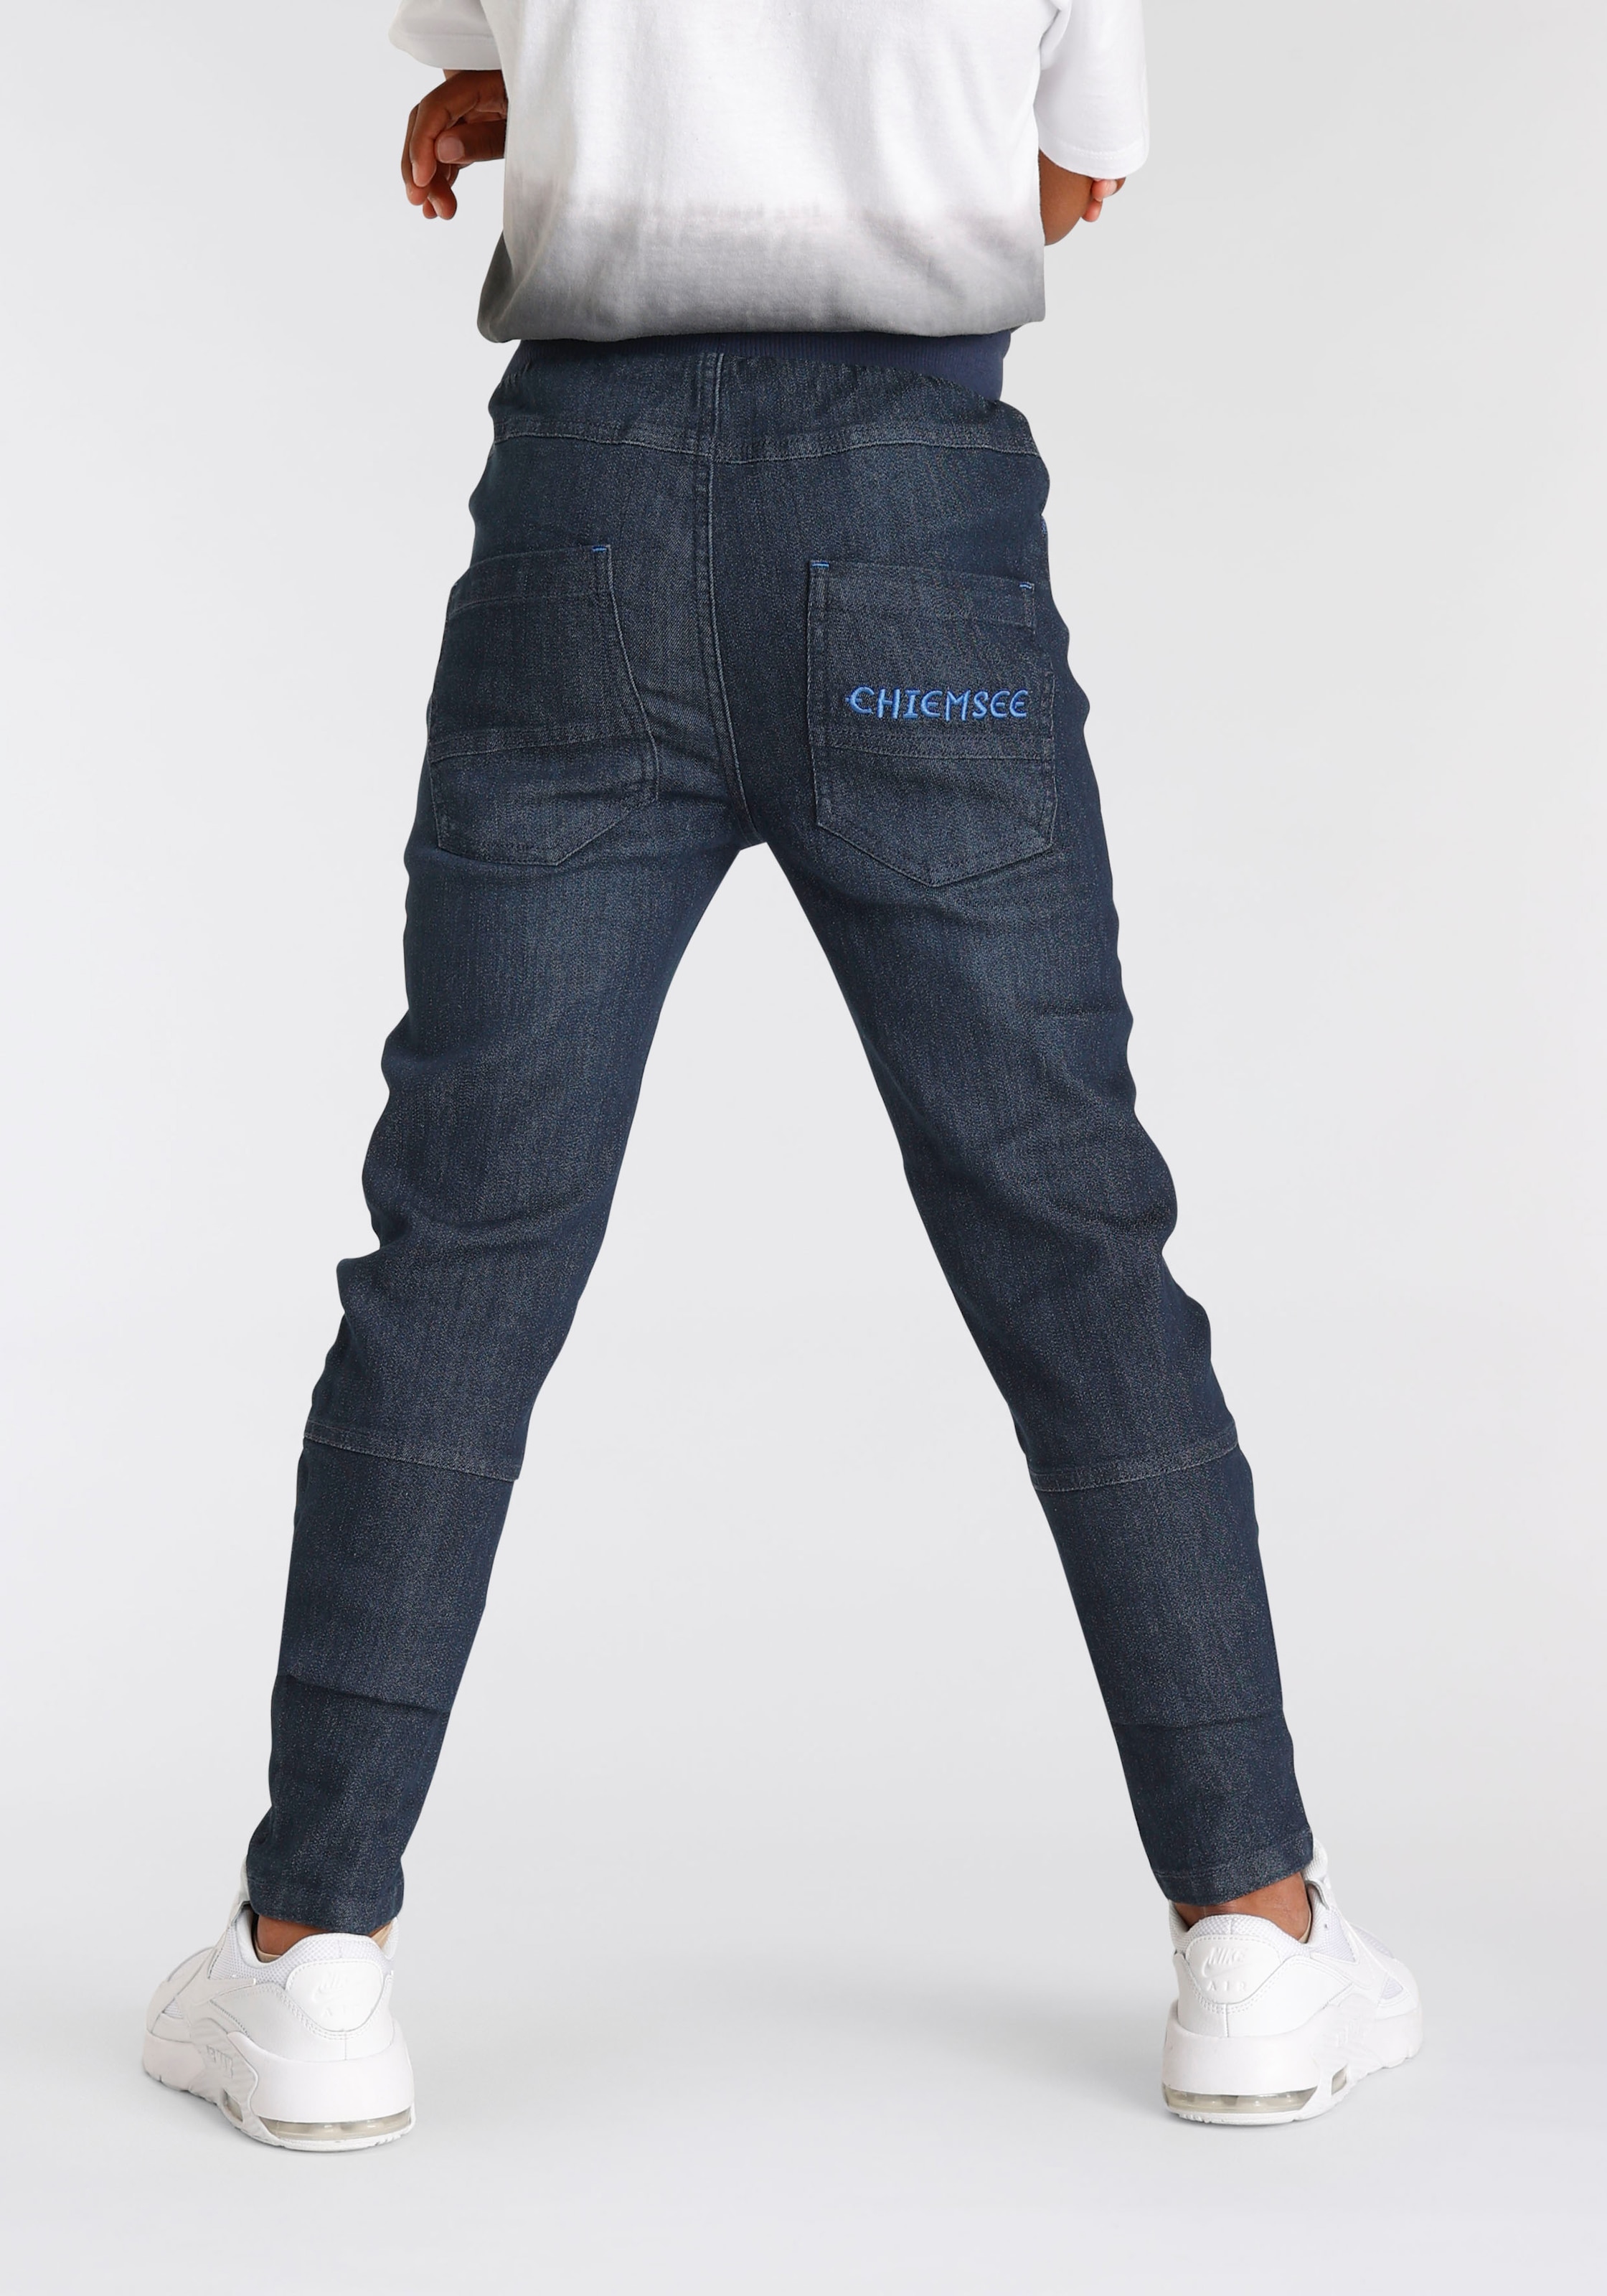 Jungen Jeans kaufen auf online